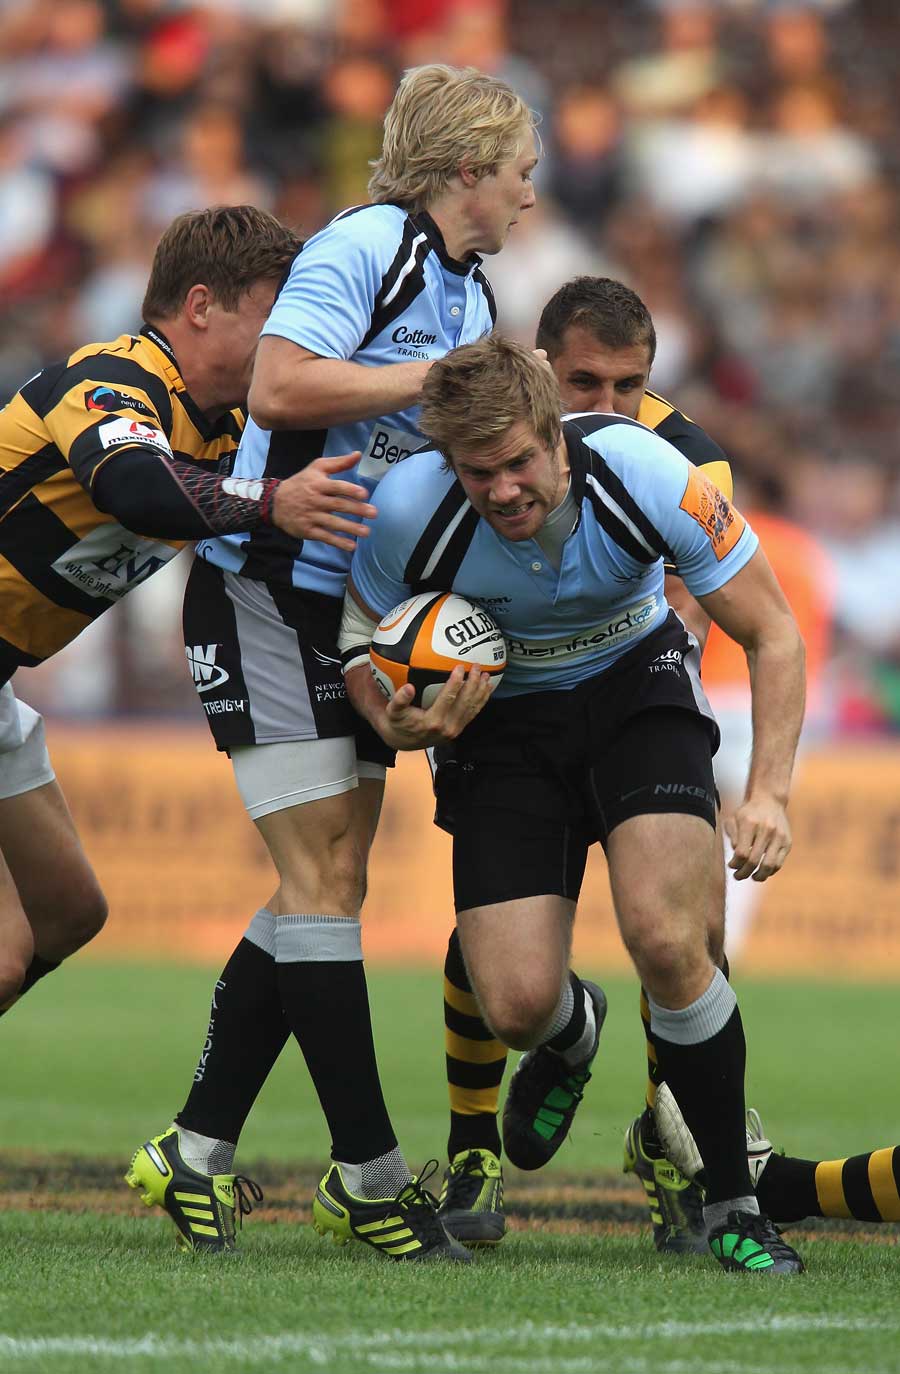 Newcastle's Luke Fielden breaks through the Wasps defence